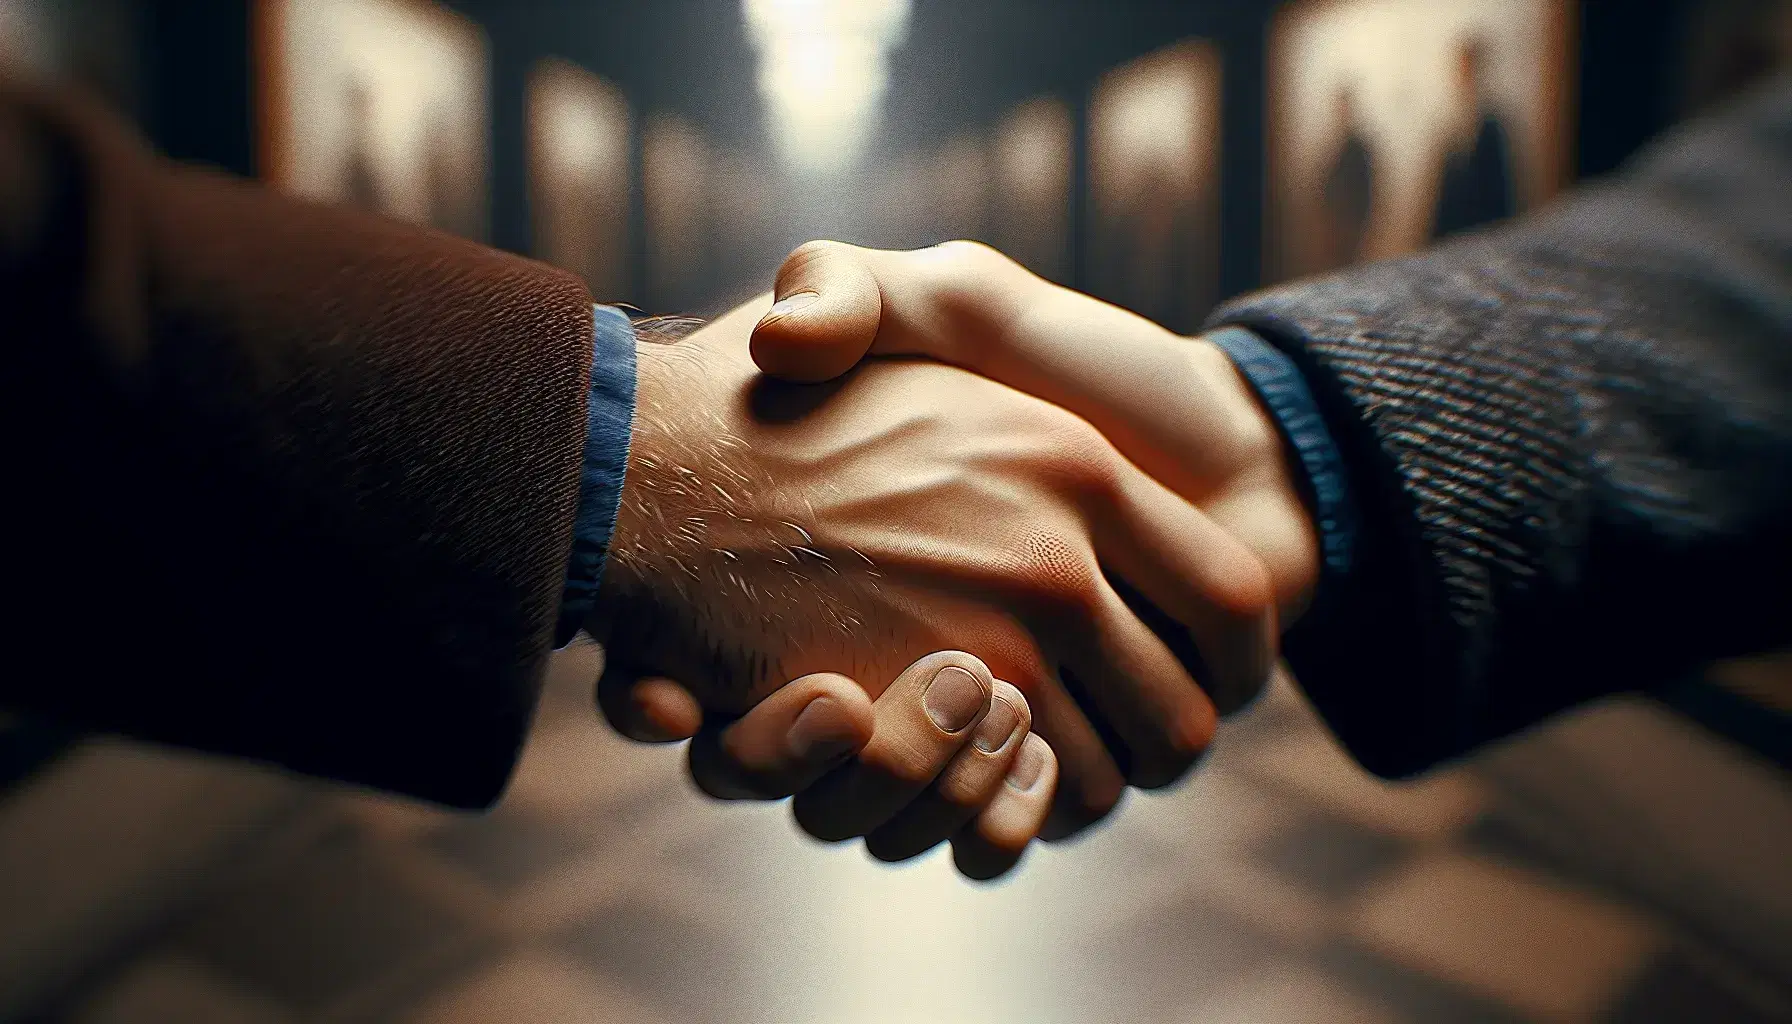 Apretón de manos entre dos personas de distinta tonalidad de piel, una con manga azul oscuro y otra con manga gris claro, en un fondo borroso.